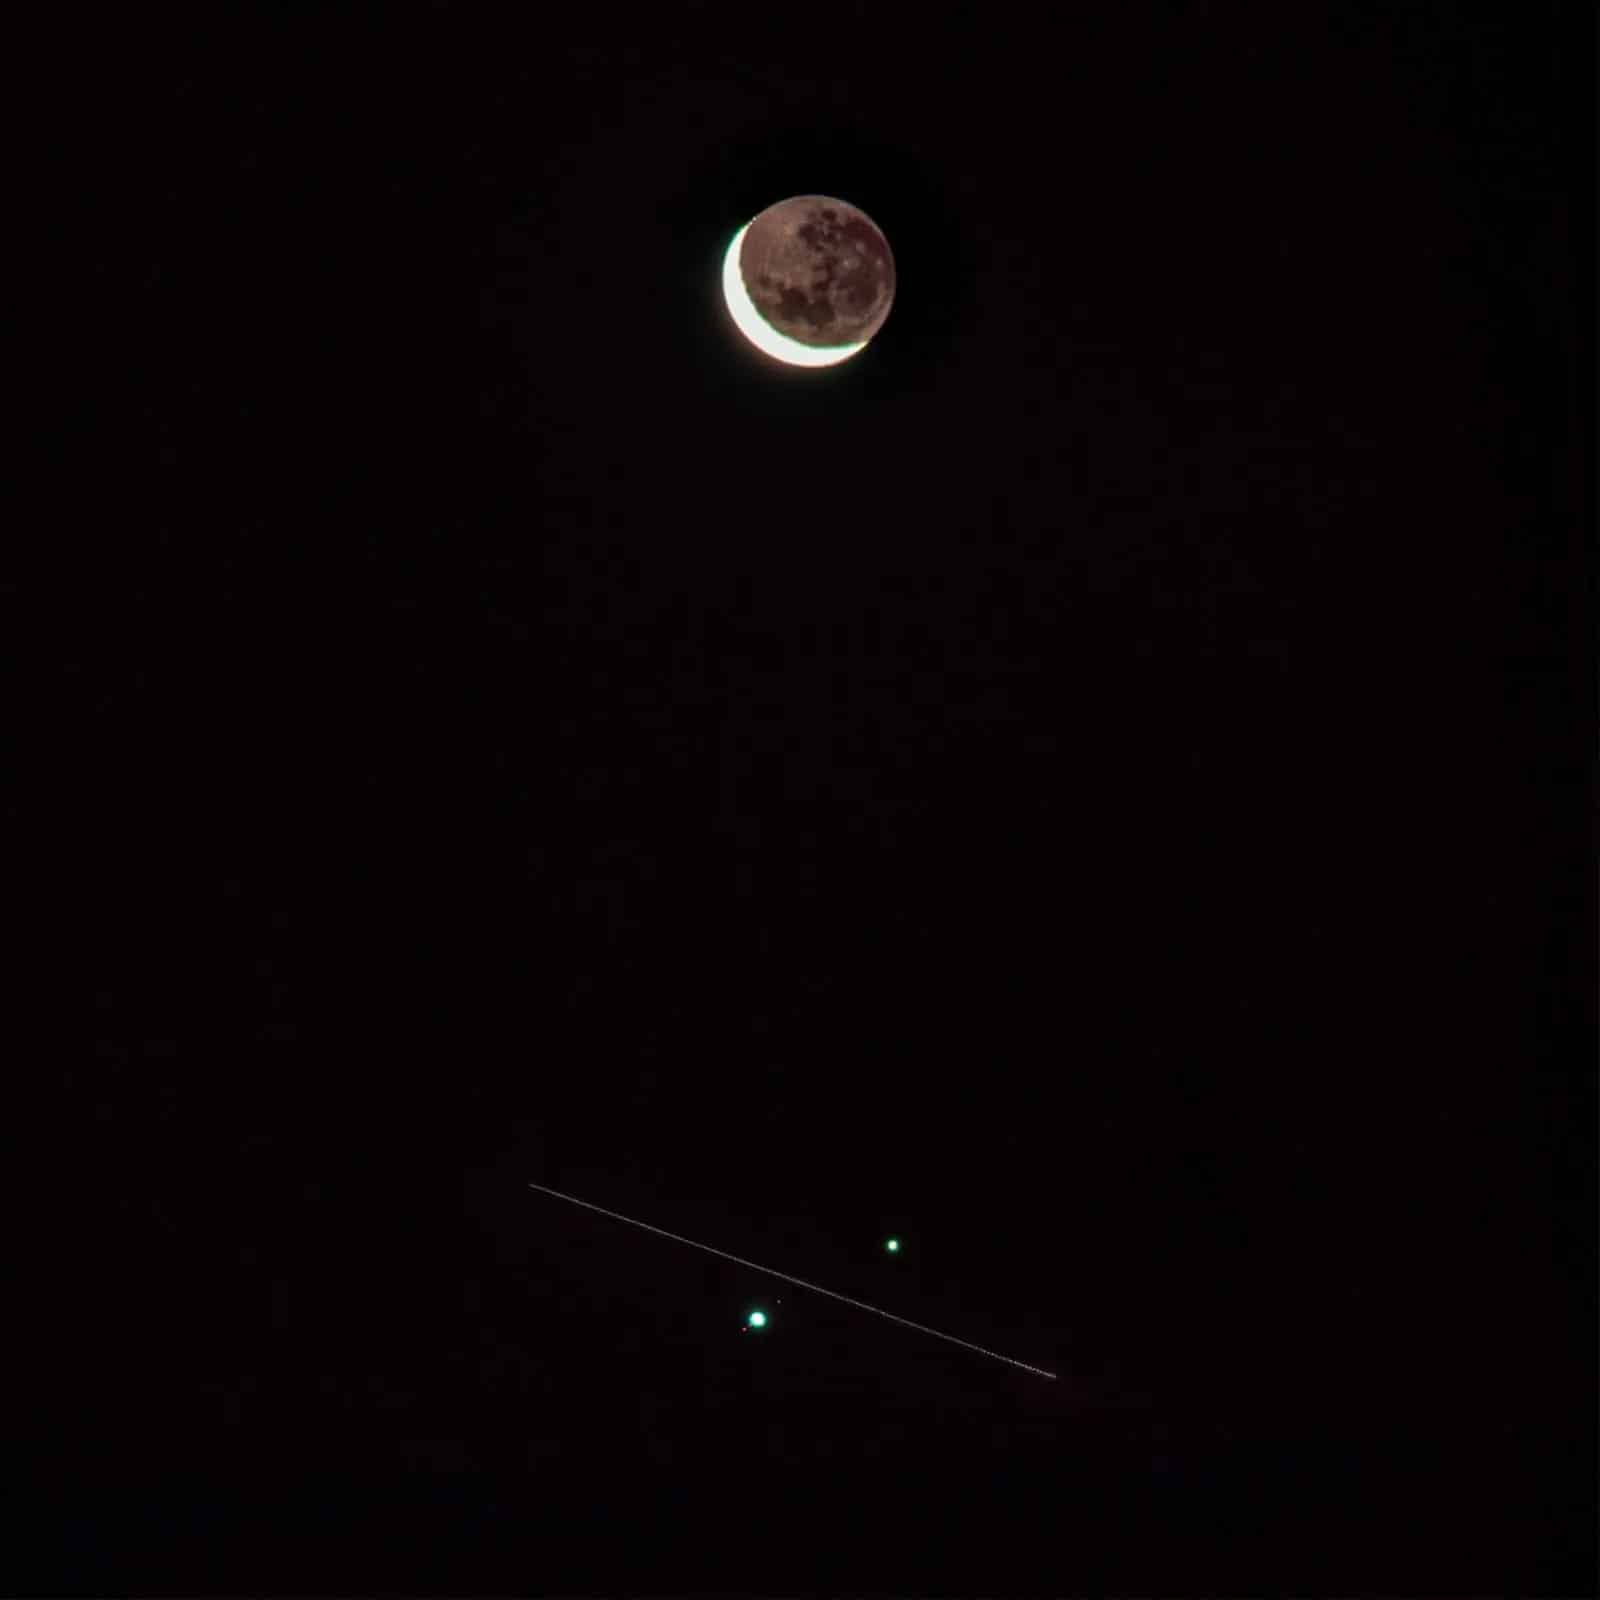 Khoảnh khắc ISS đi qua giữa Sao Mộc và Sao Thổ vừa được chụp lại